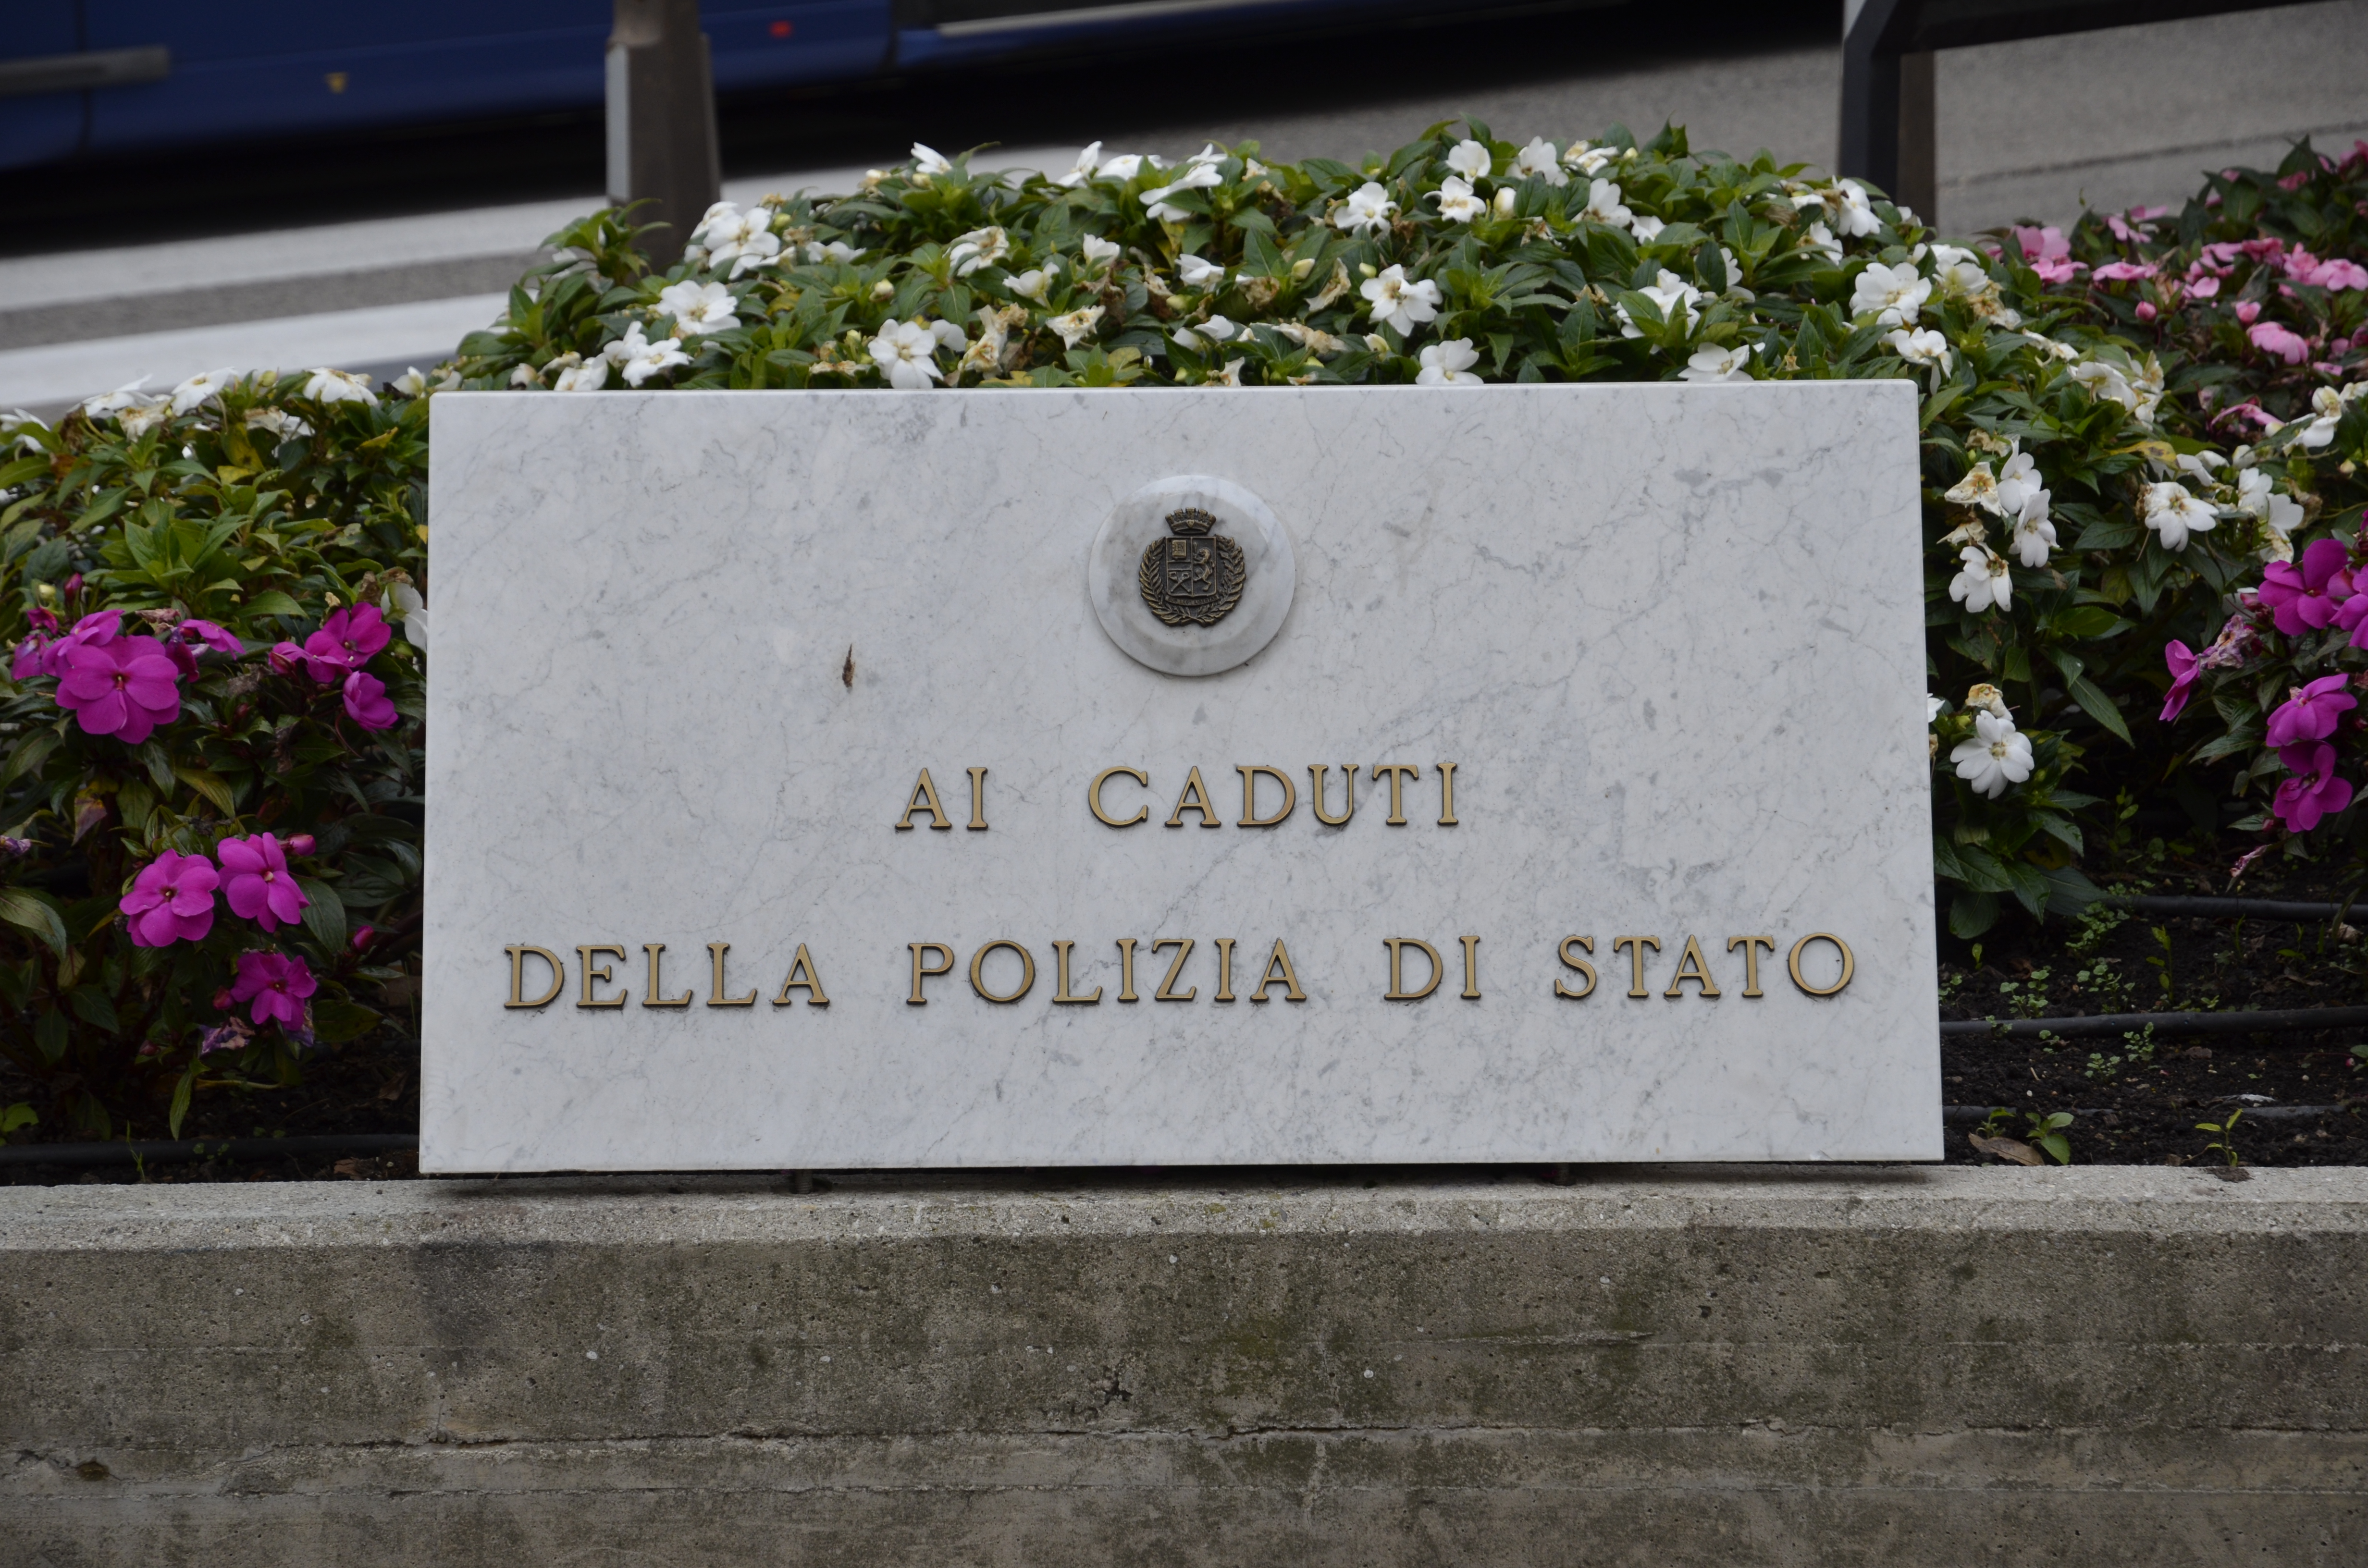 Padova 2 Novembre 2017 - Commemorazione dei caduti della Polizia di Stato.